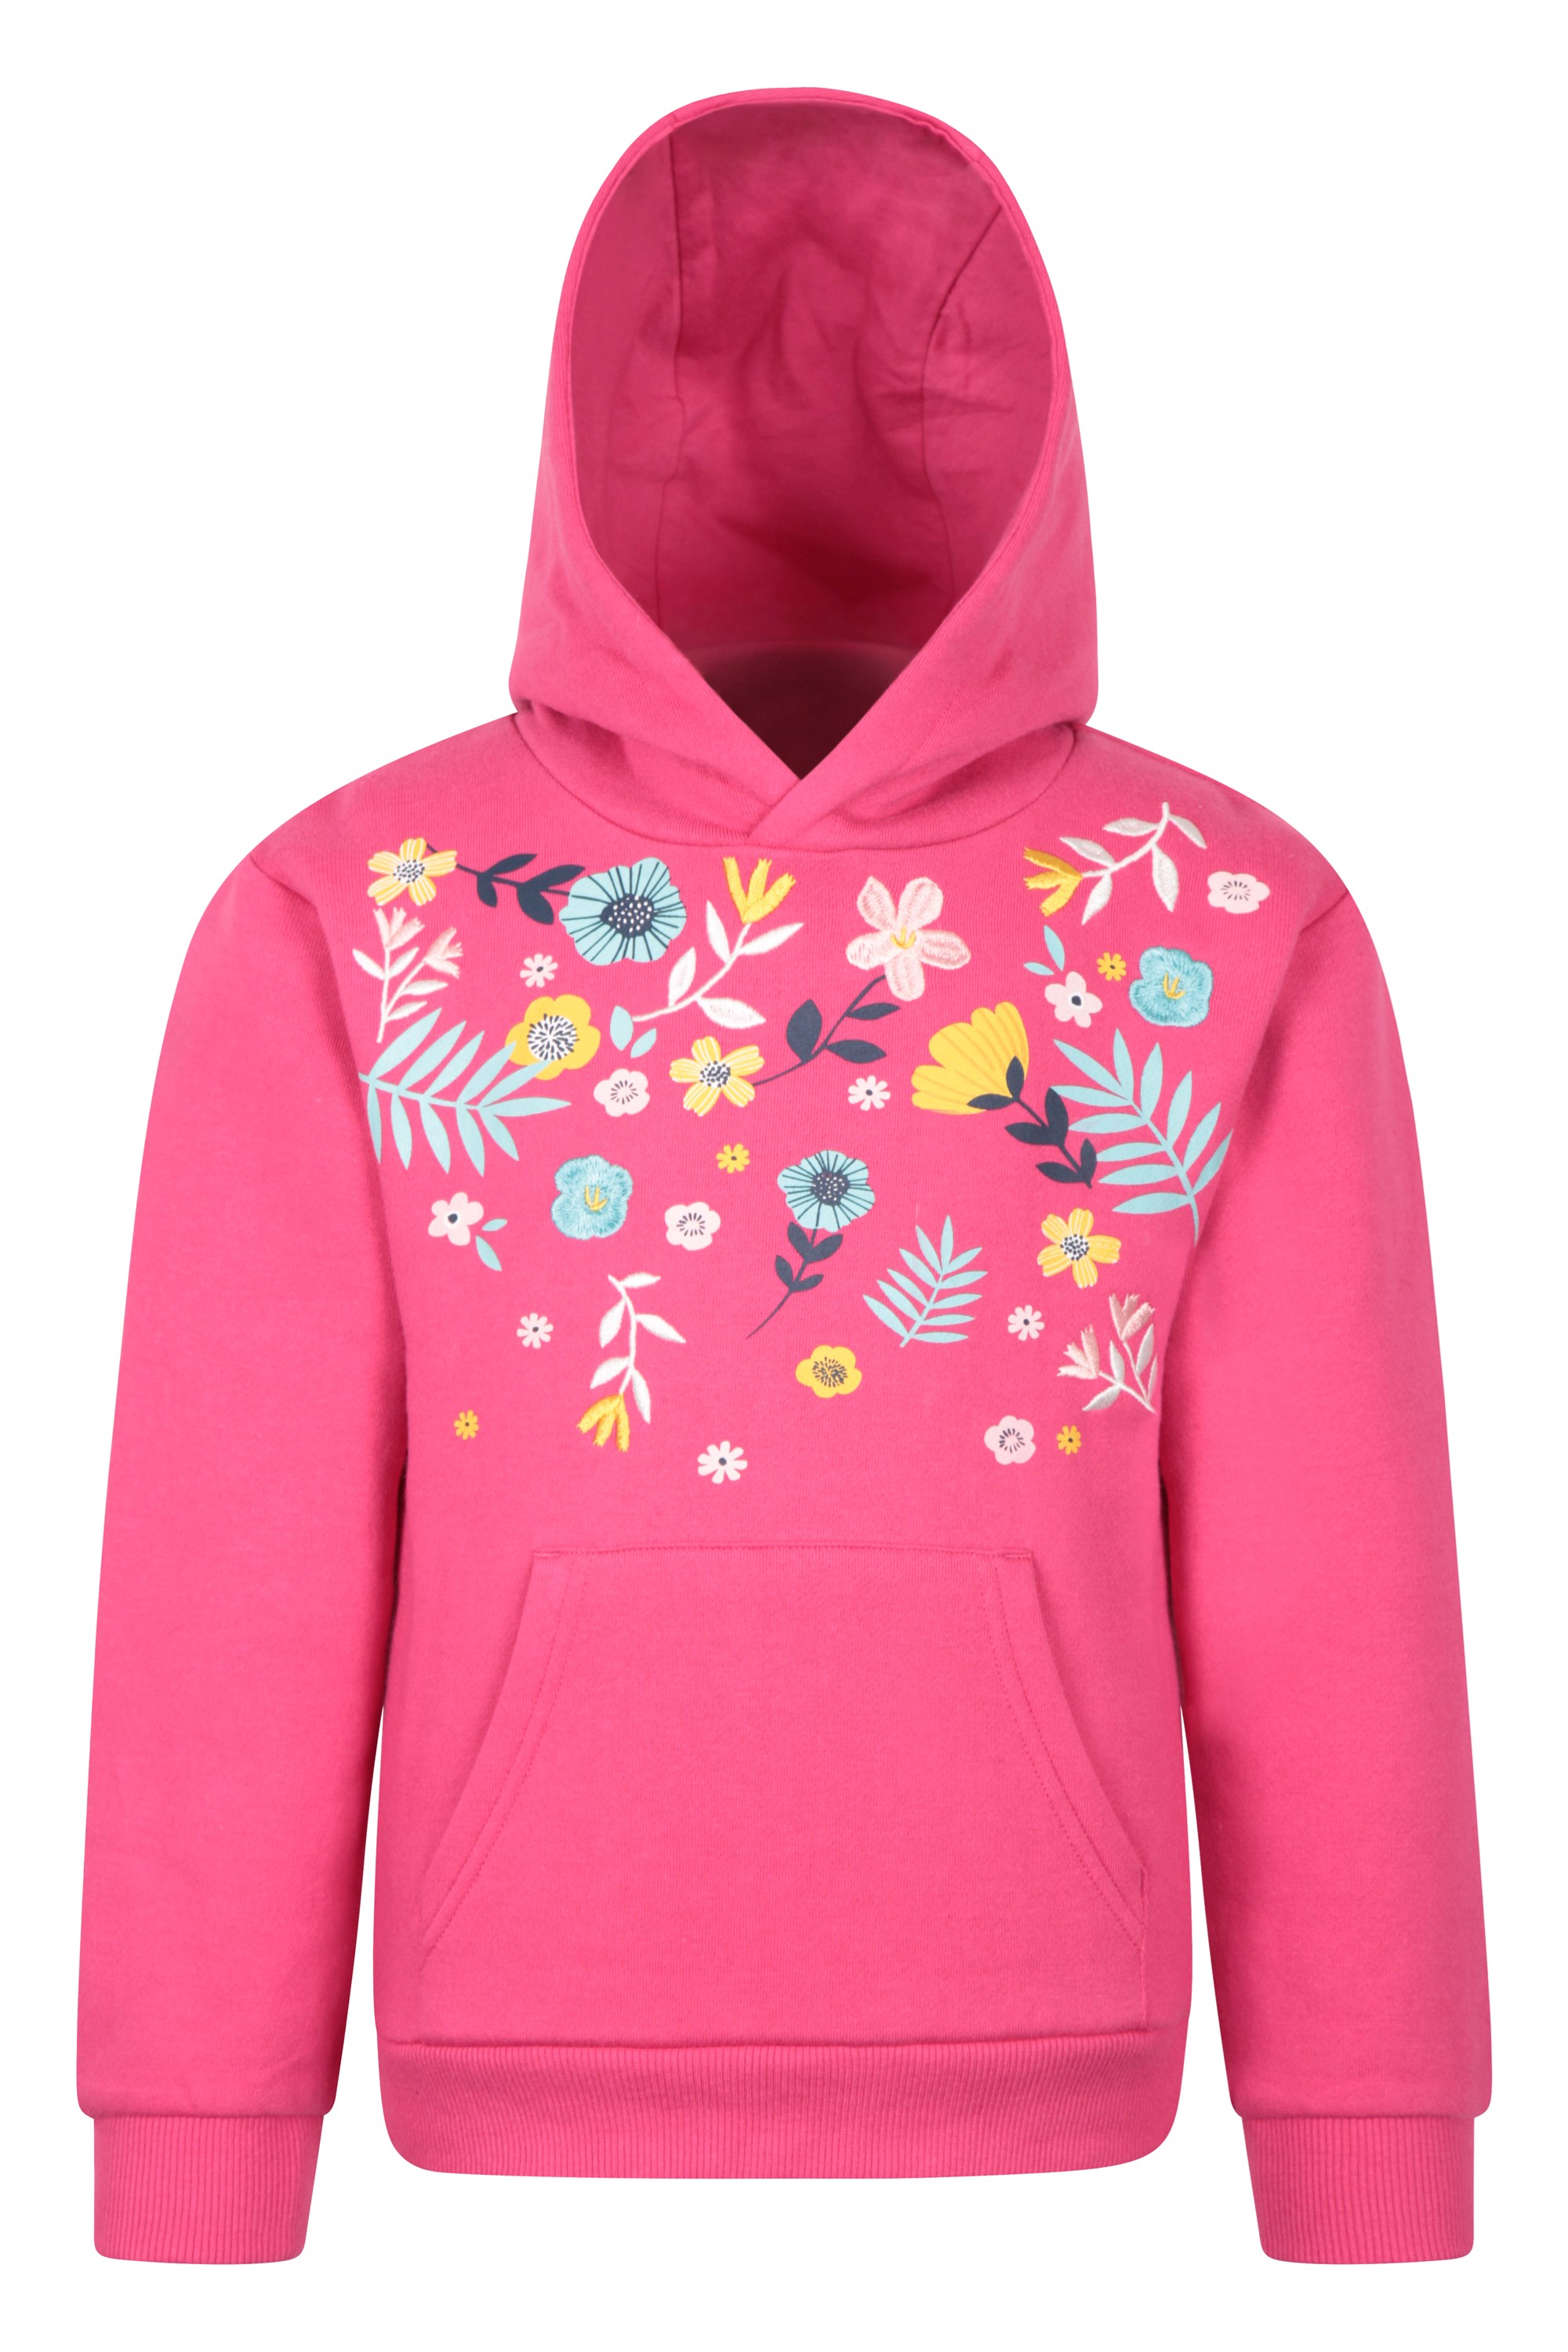 Bloom Embroidered Kids Hoodie - Pink